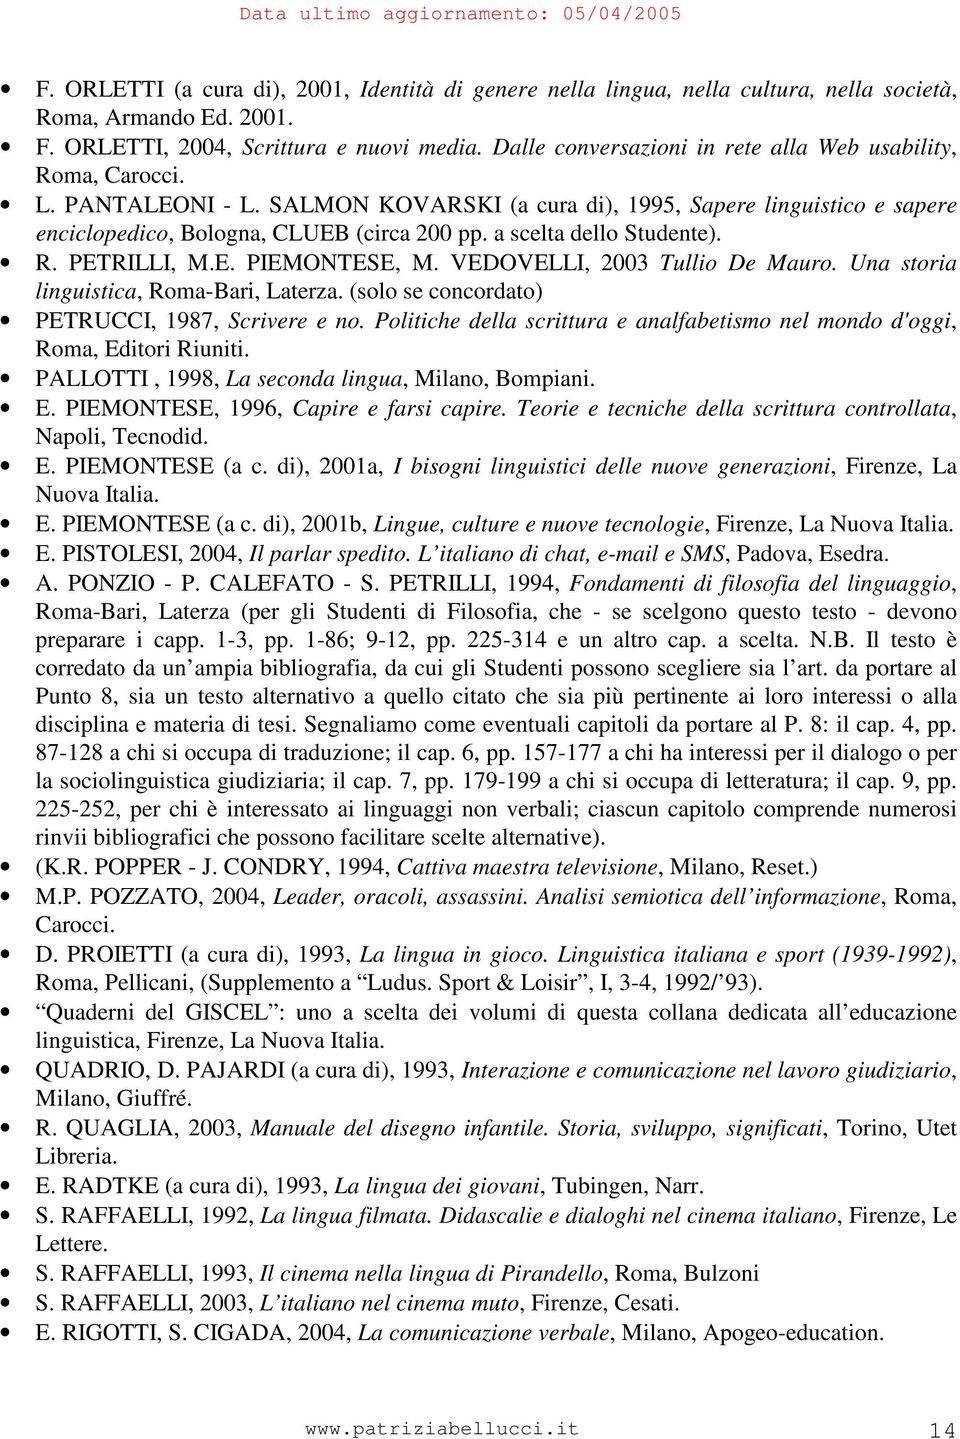 a scelta dello Studente). R. PETRILLI, M.E. PIEMONTESE, M. VEDOVELLI, 2003 Tullio De Mauro. Una storia linguistica, Roma-Bari, Laterza. (solo se concordato) PETRUCCI, 1987, Scrivere e no.